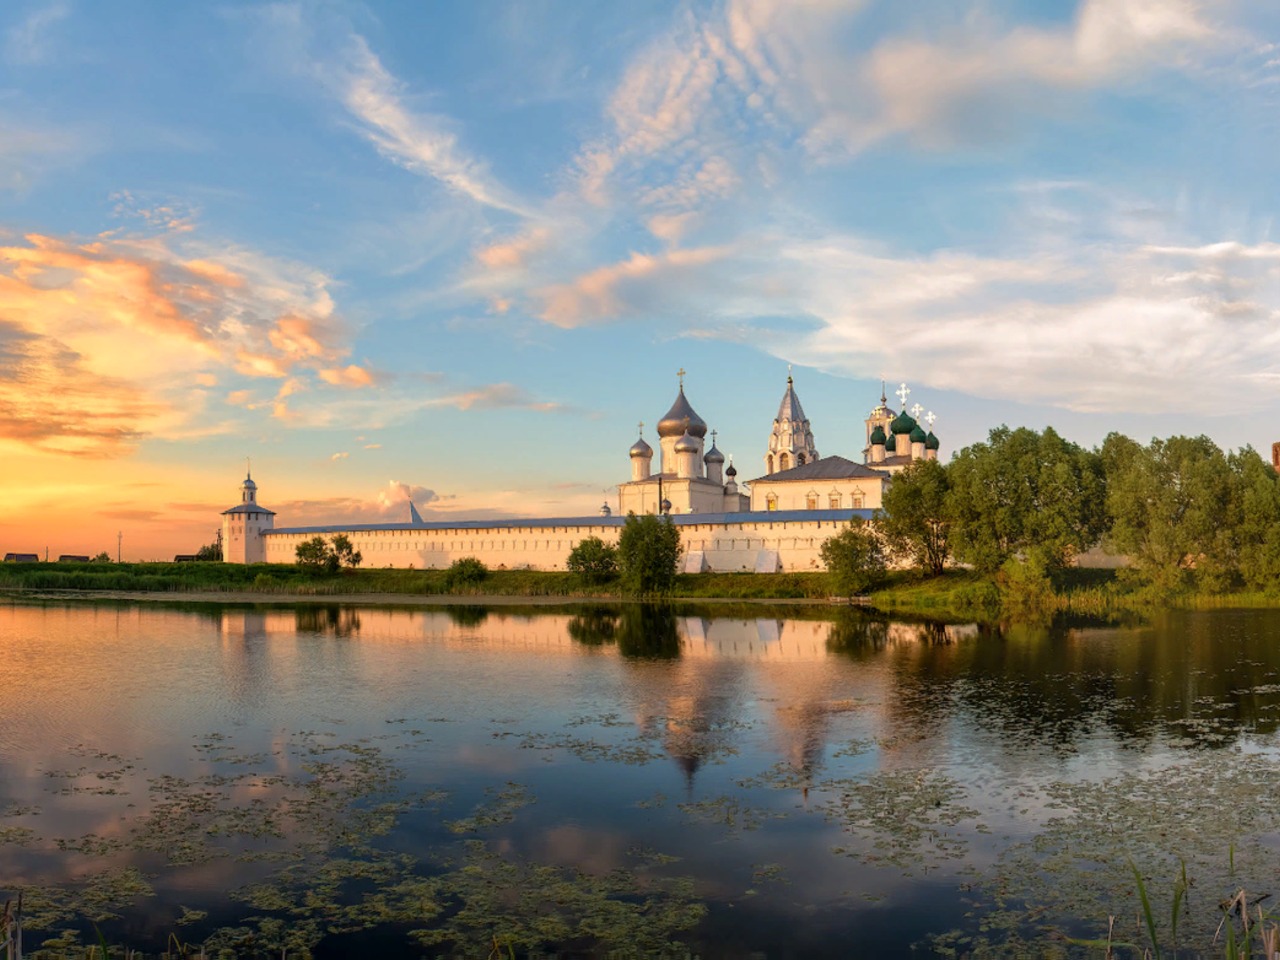 Обзорный тур “Старинный Переславль-Залесский” | Цена 5500₽, отзывы, описание экскурсии